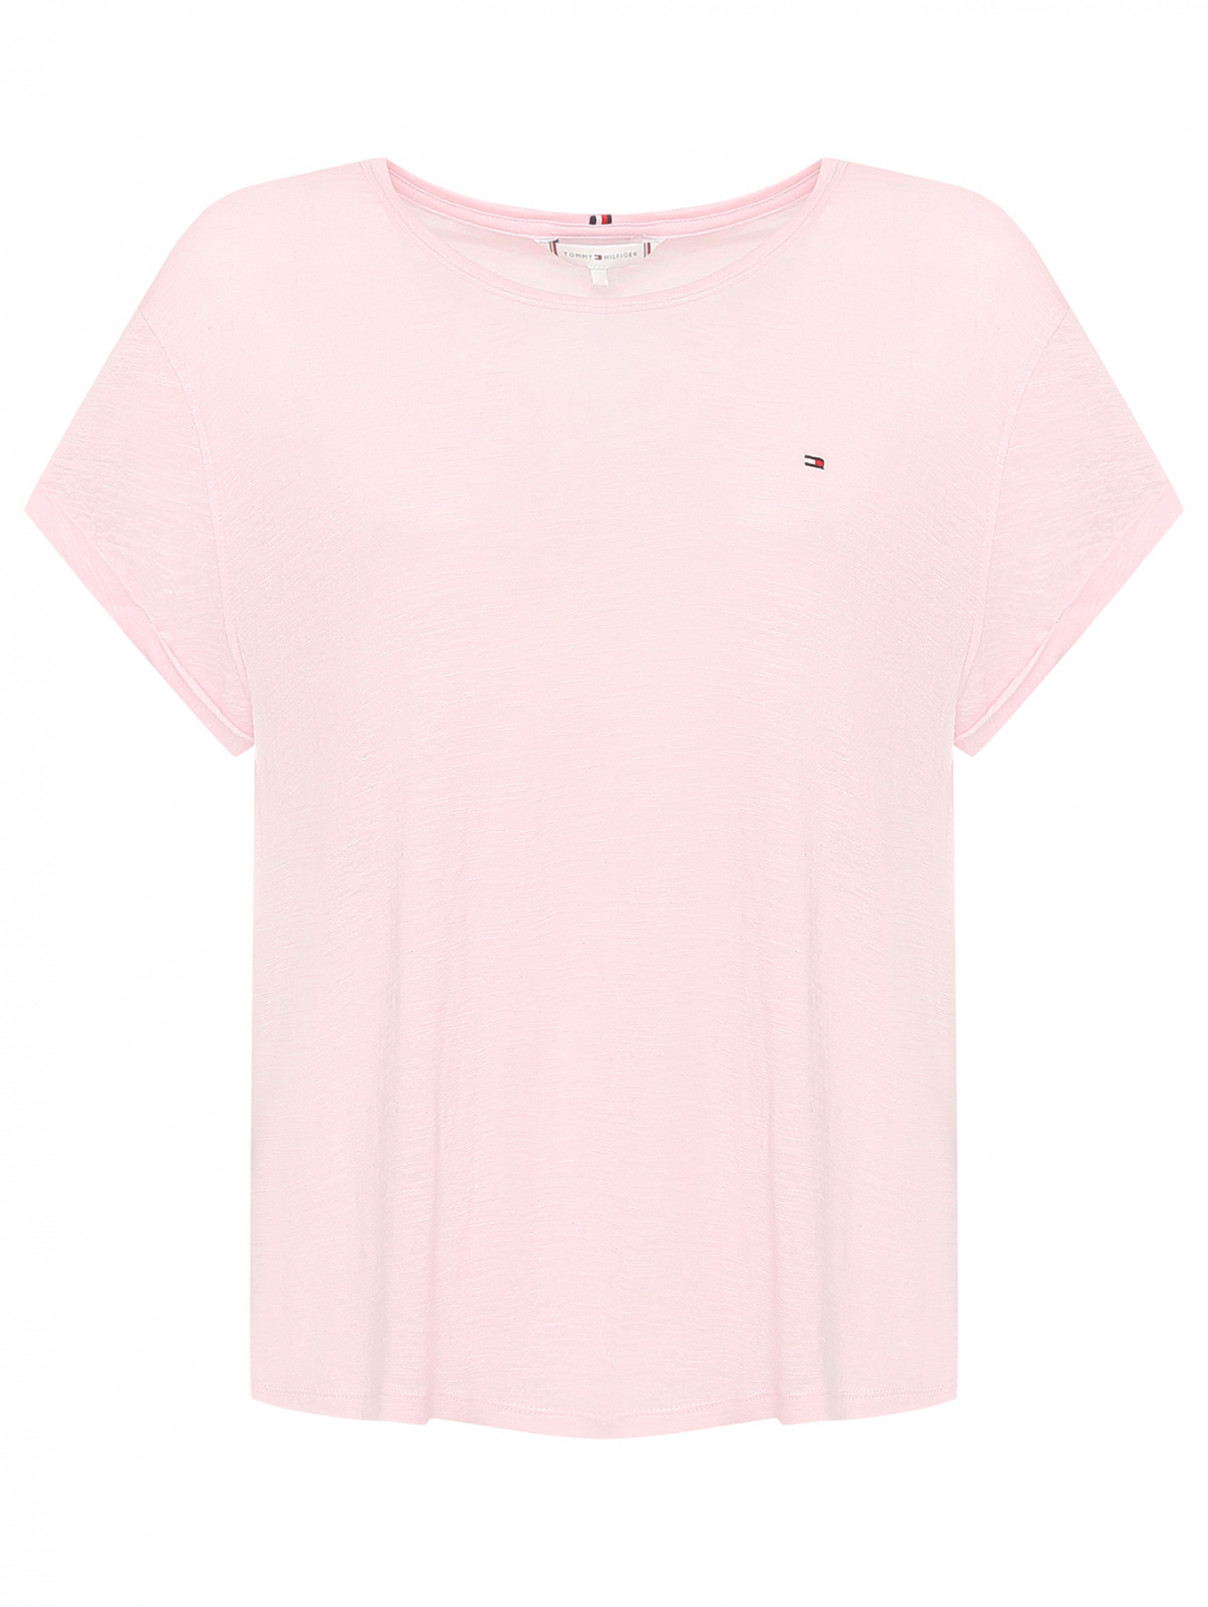 Однотонная футболка с логотипом Tommy Hilfiger  –  Общий вид  – Цвет:  Розовый